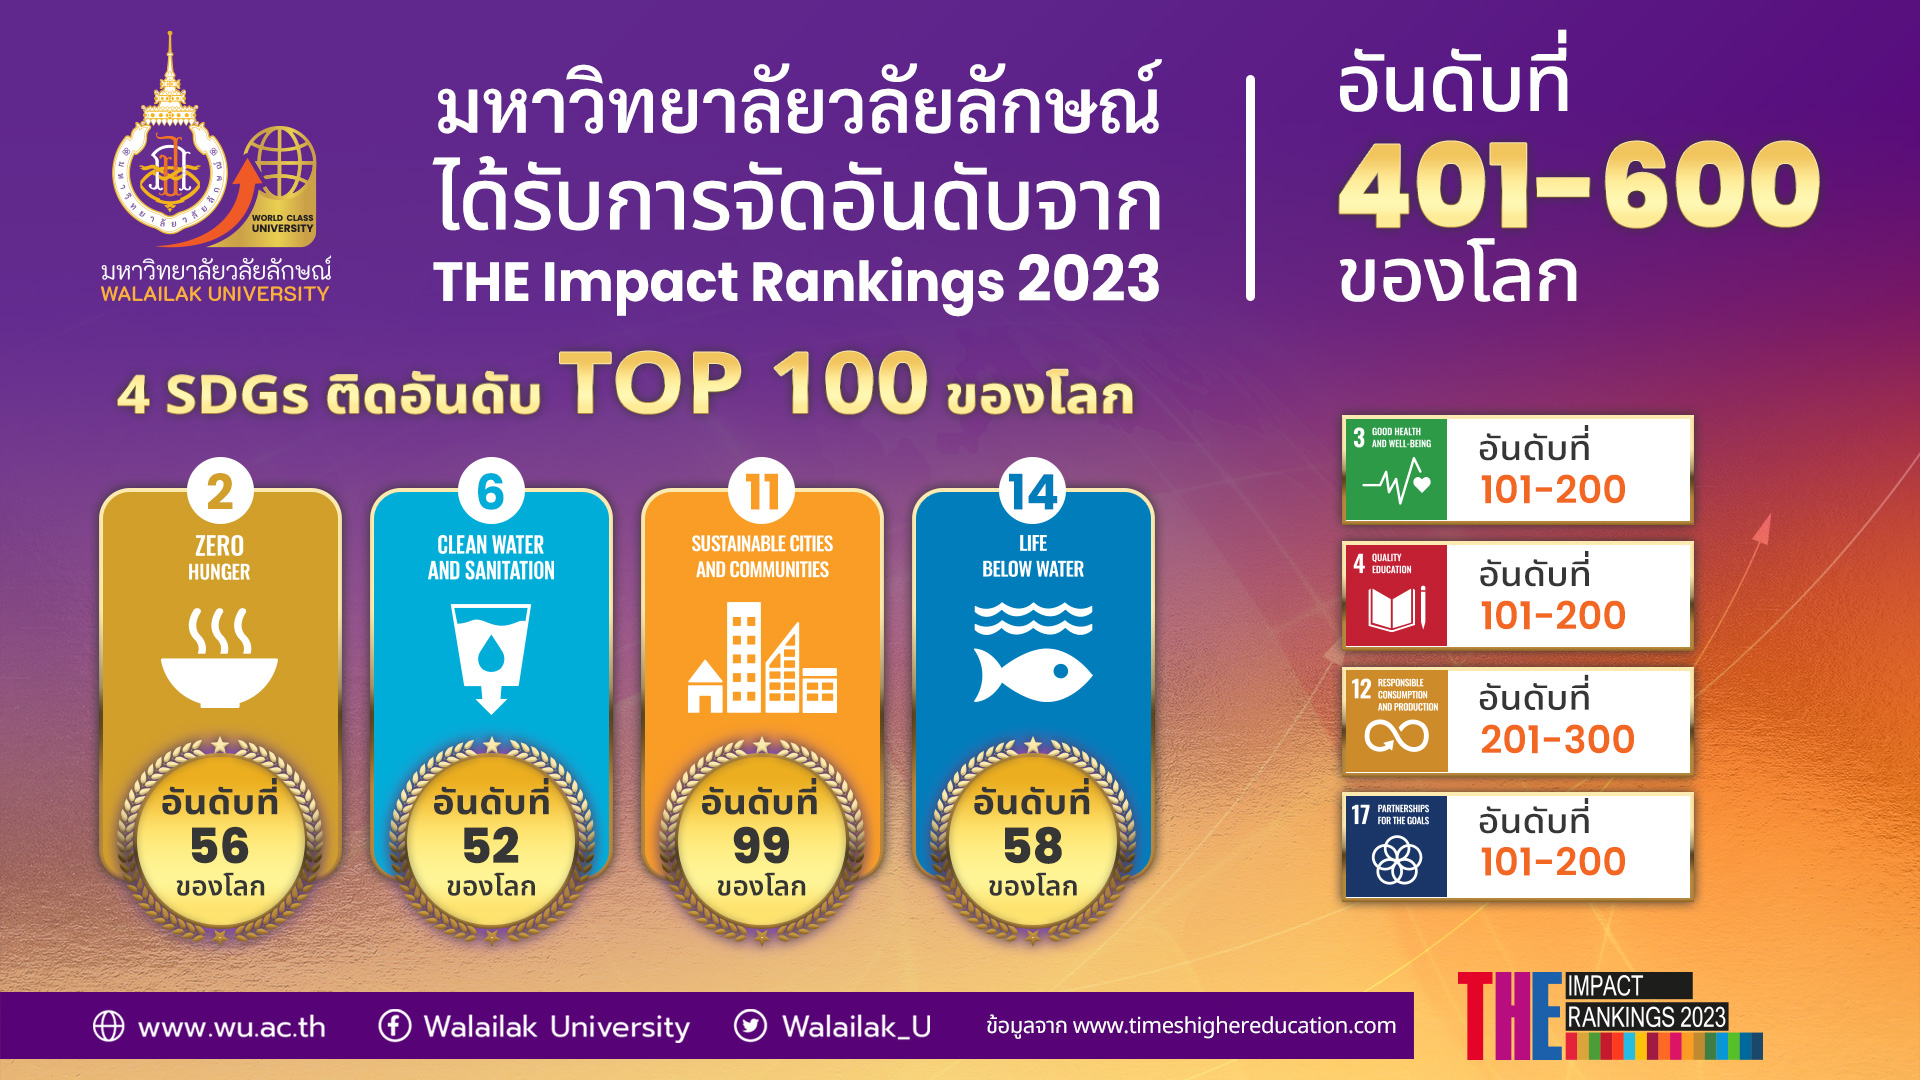 ม.วลัยลักษณ์ขยับ 200 อันดับ ทะยานขึ้นมาอยู่อันดับที่ 401-600 ของโลก อันดับที่ 10 ร่วมของไทย THE Impact Rankings 2023